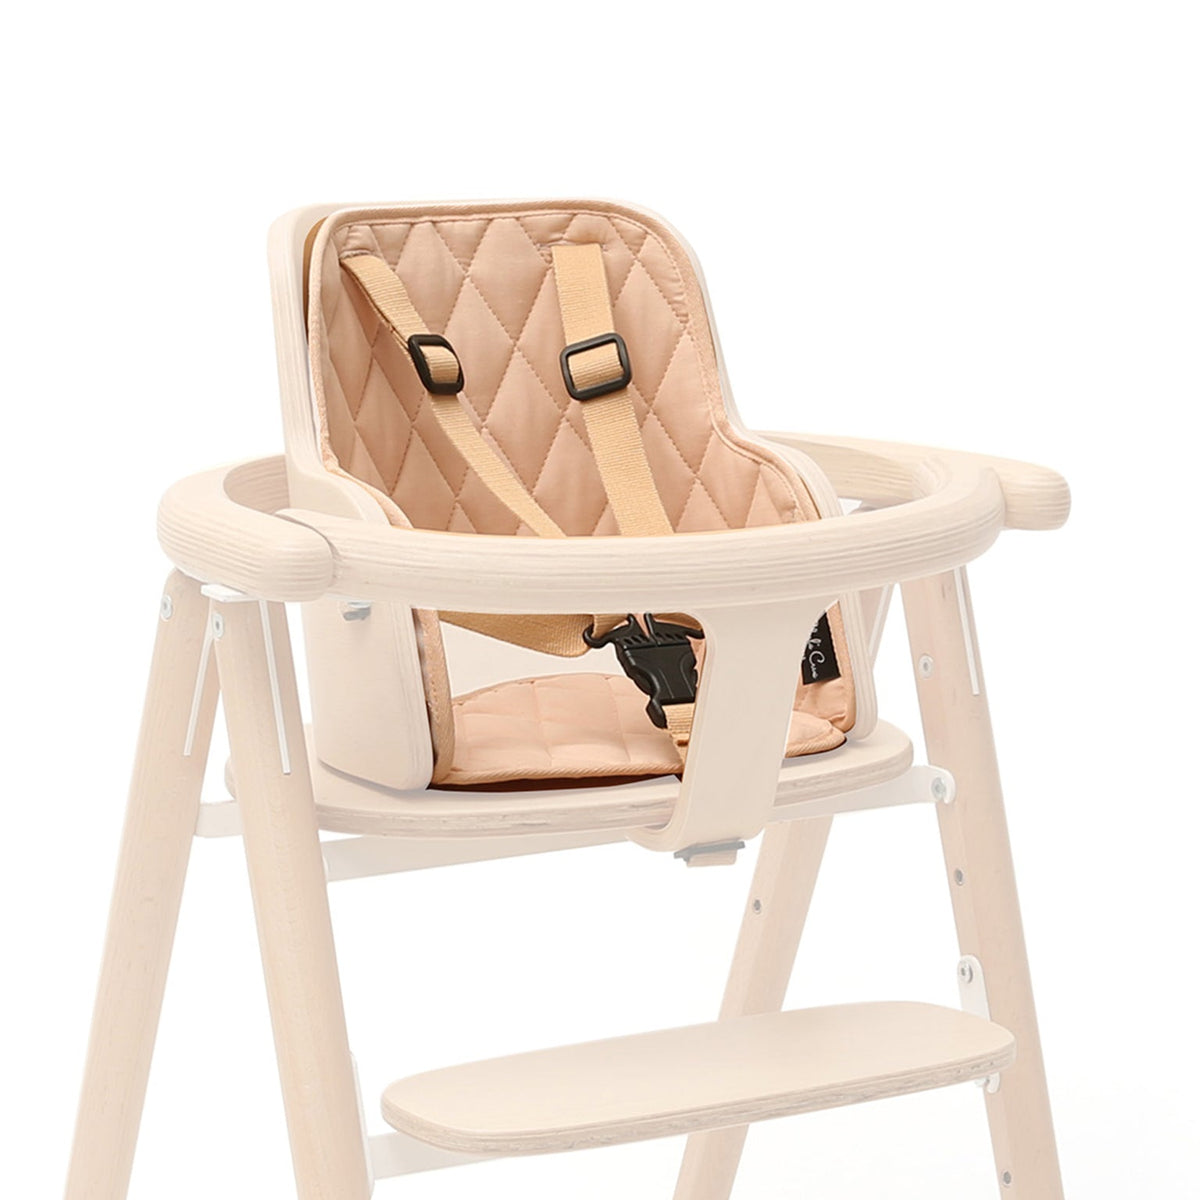 LEANDER chaise haute évolutive et design, mobilier enfant design